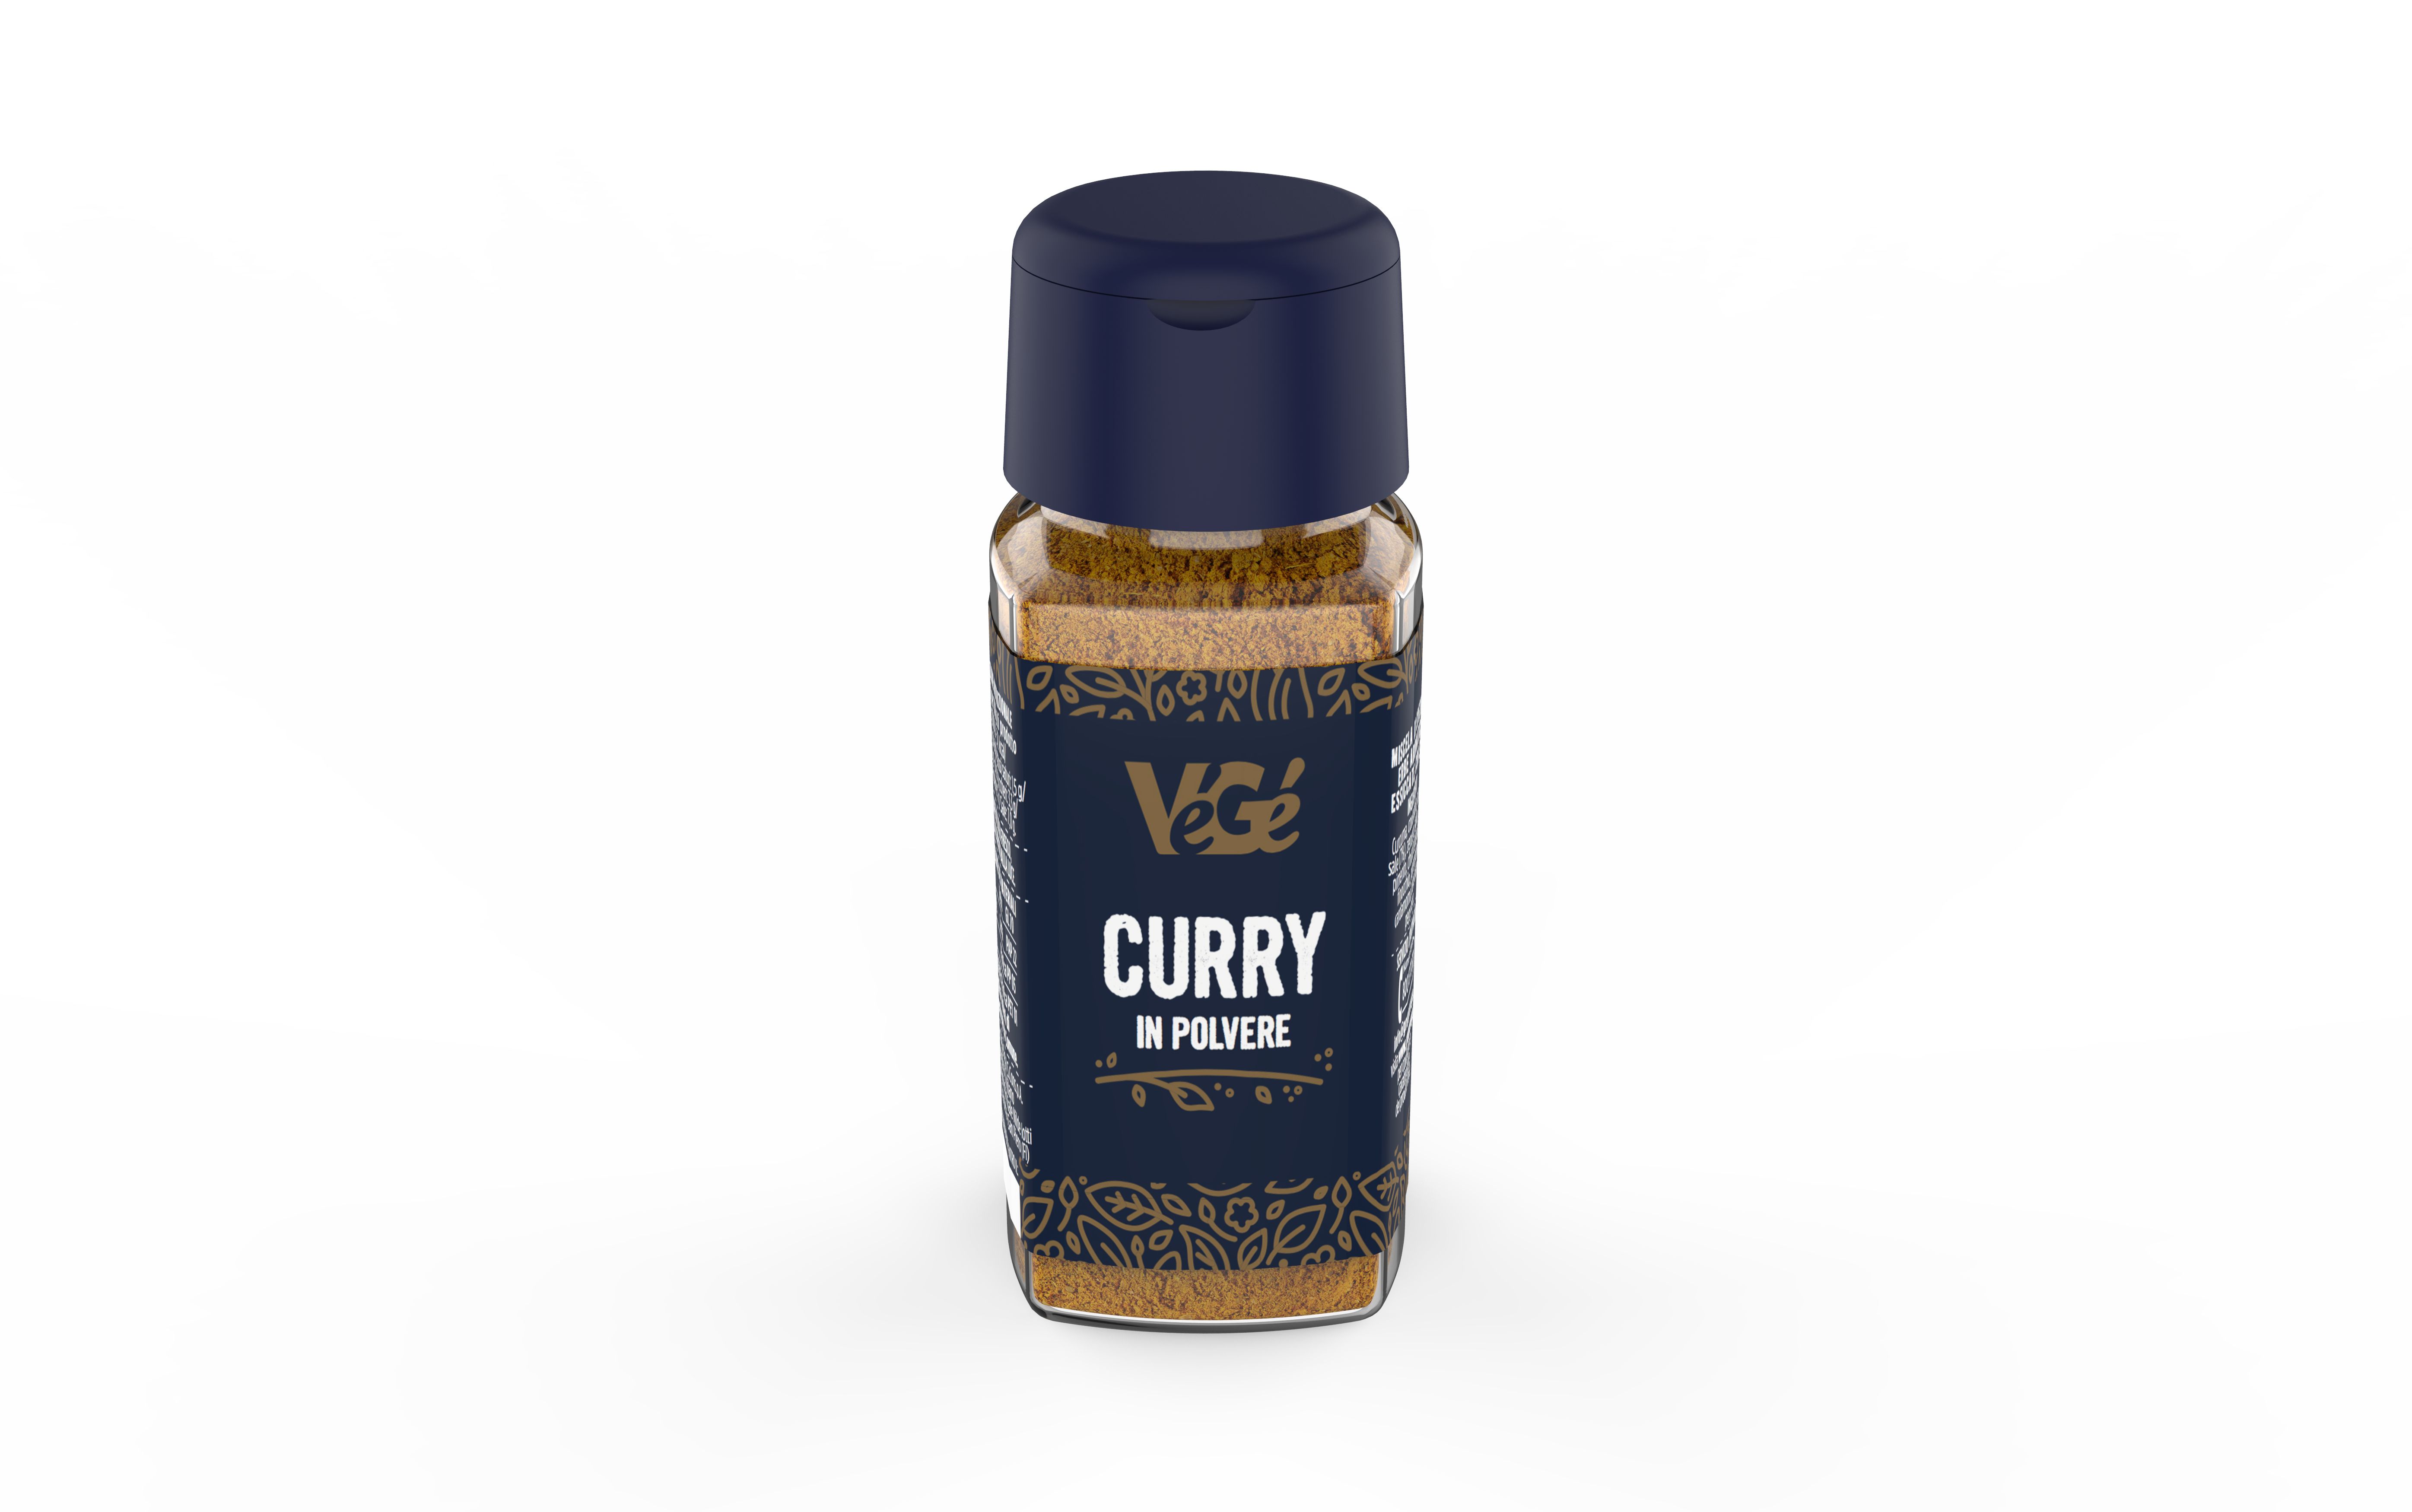 Curry in polvere Vegé GDO (Grande Distribuzione Organizzata)